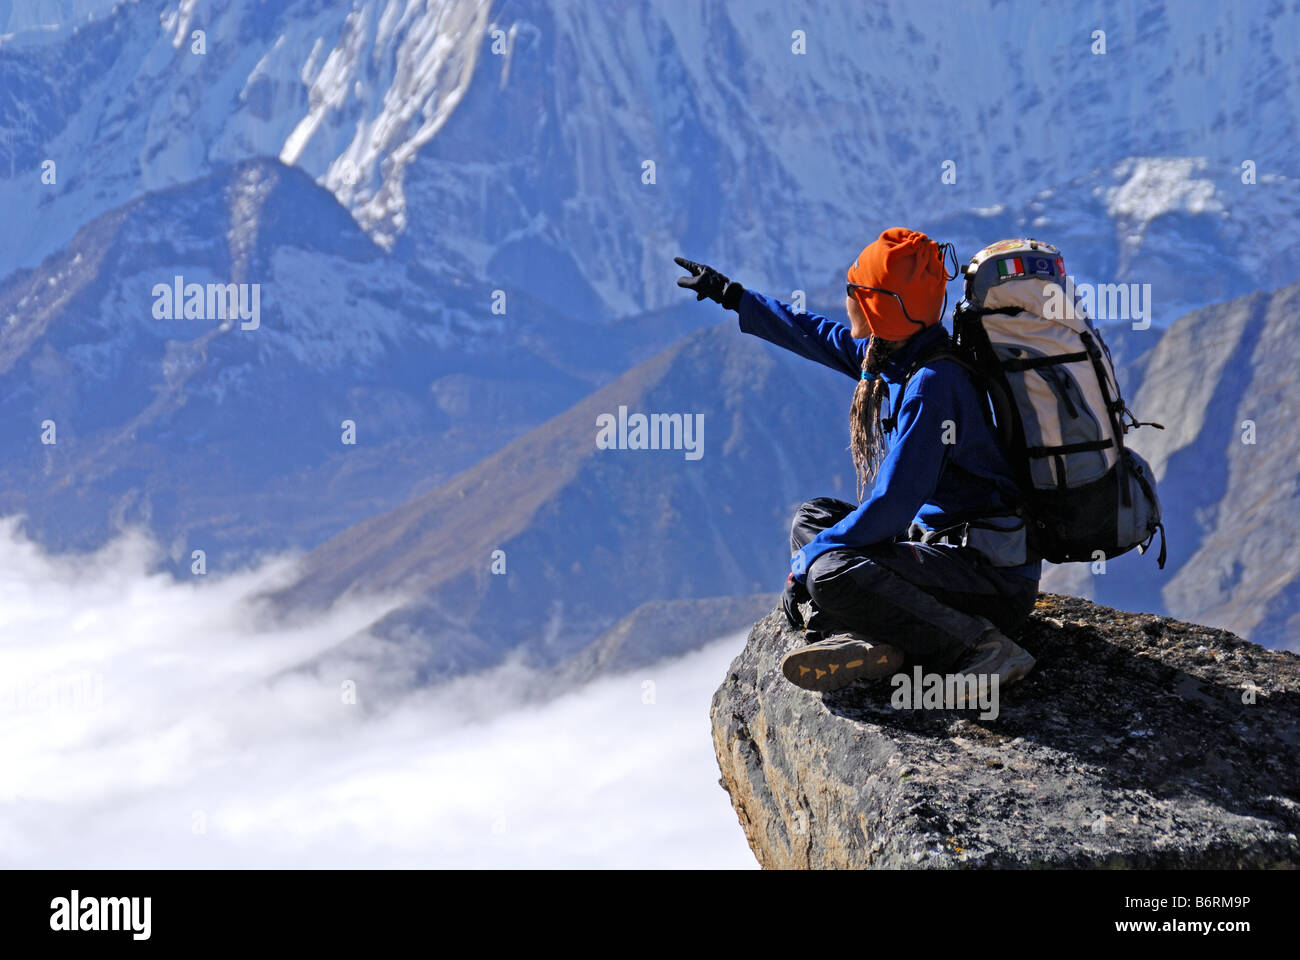 Trekking in Nepal Stock Photo